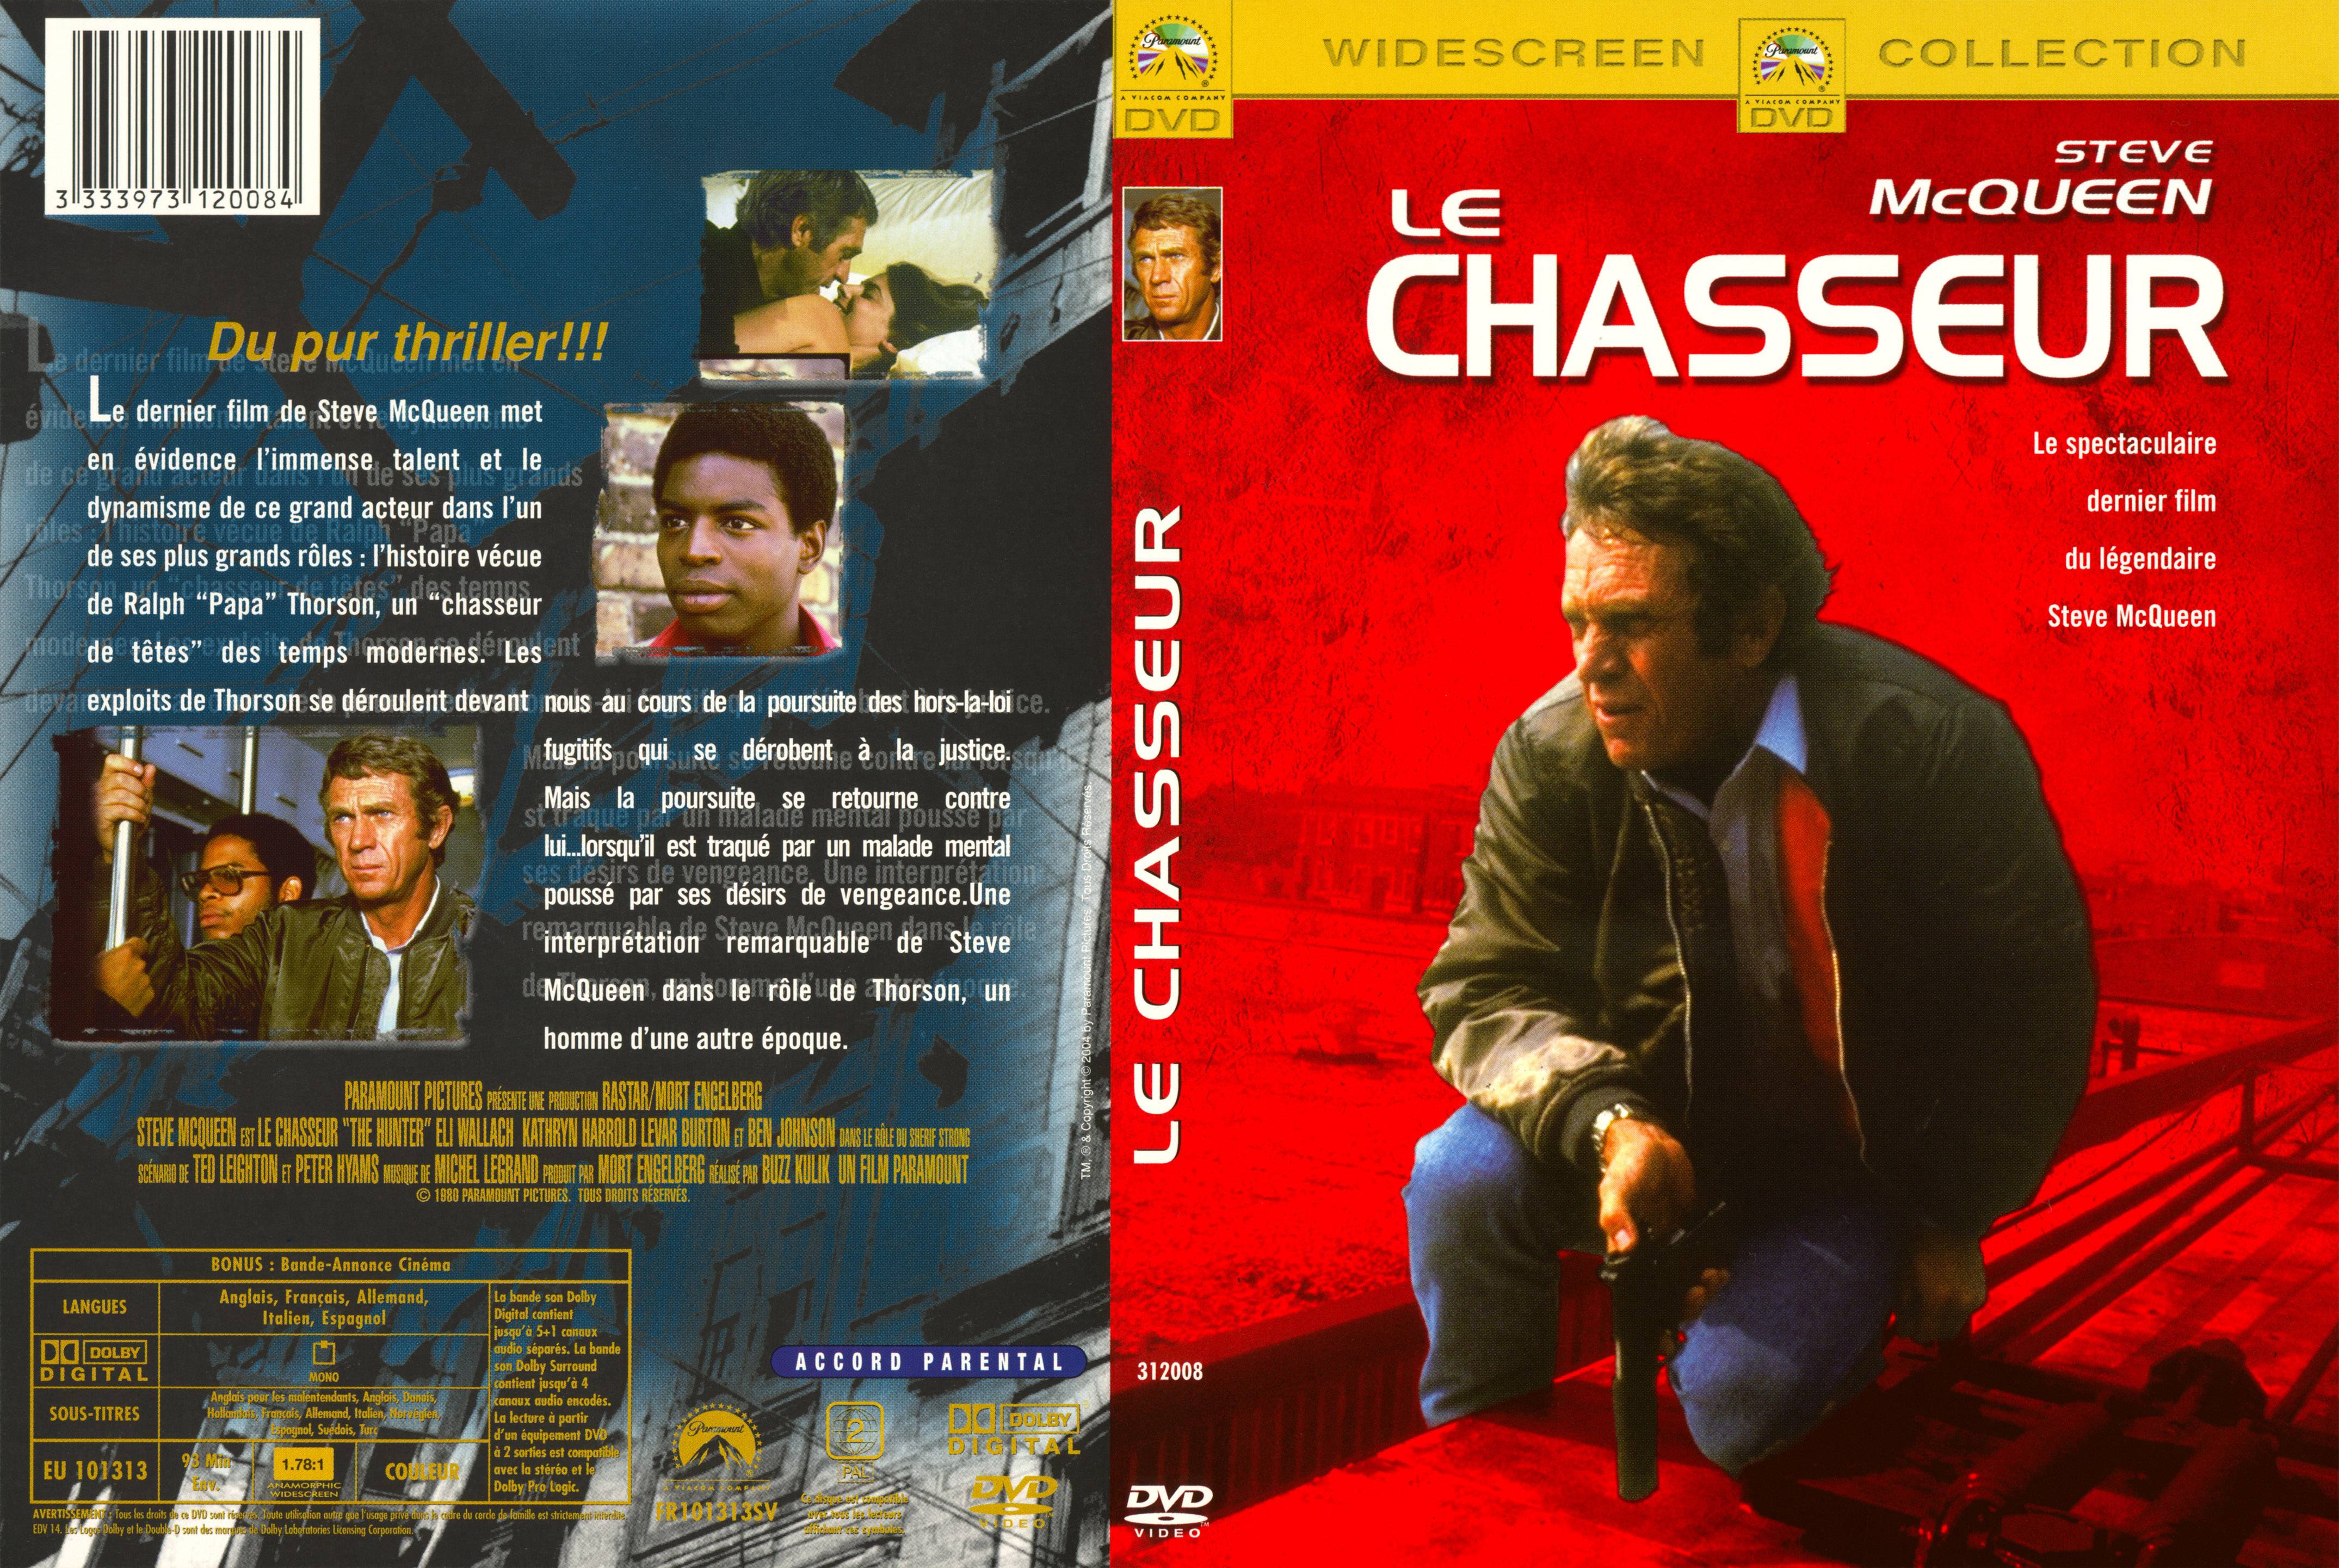 Jaquette DVD Le chasseur